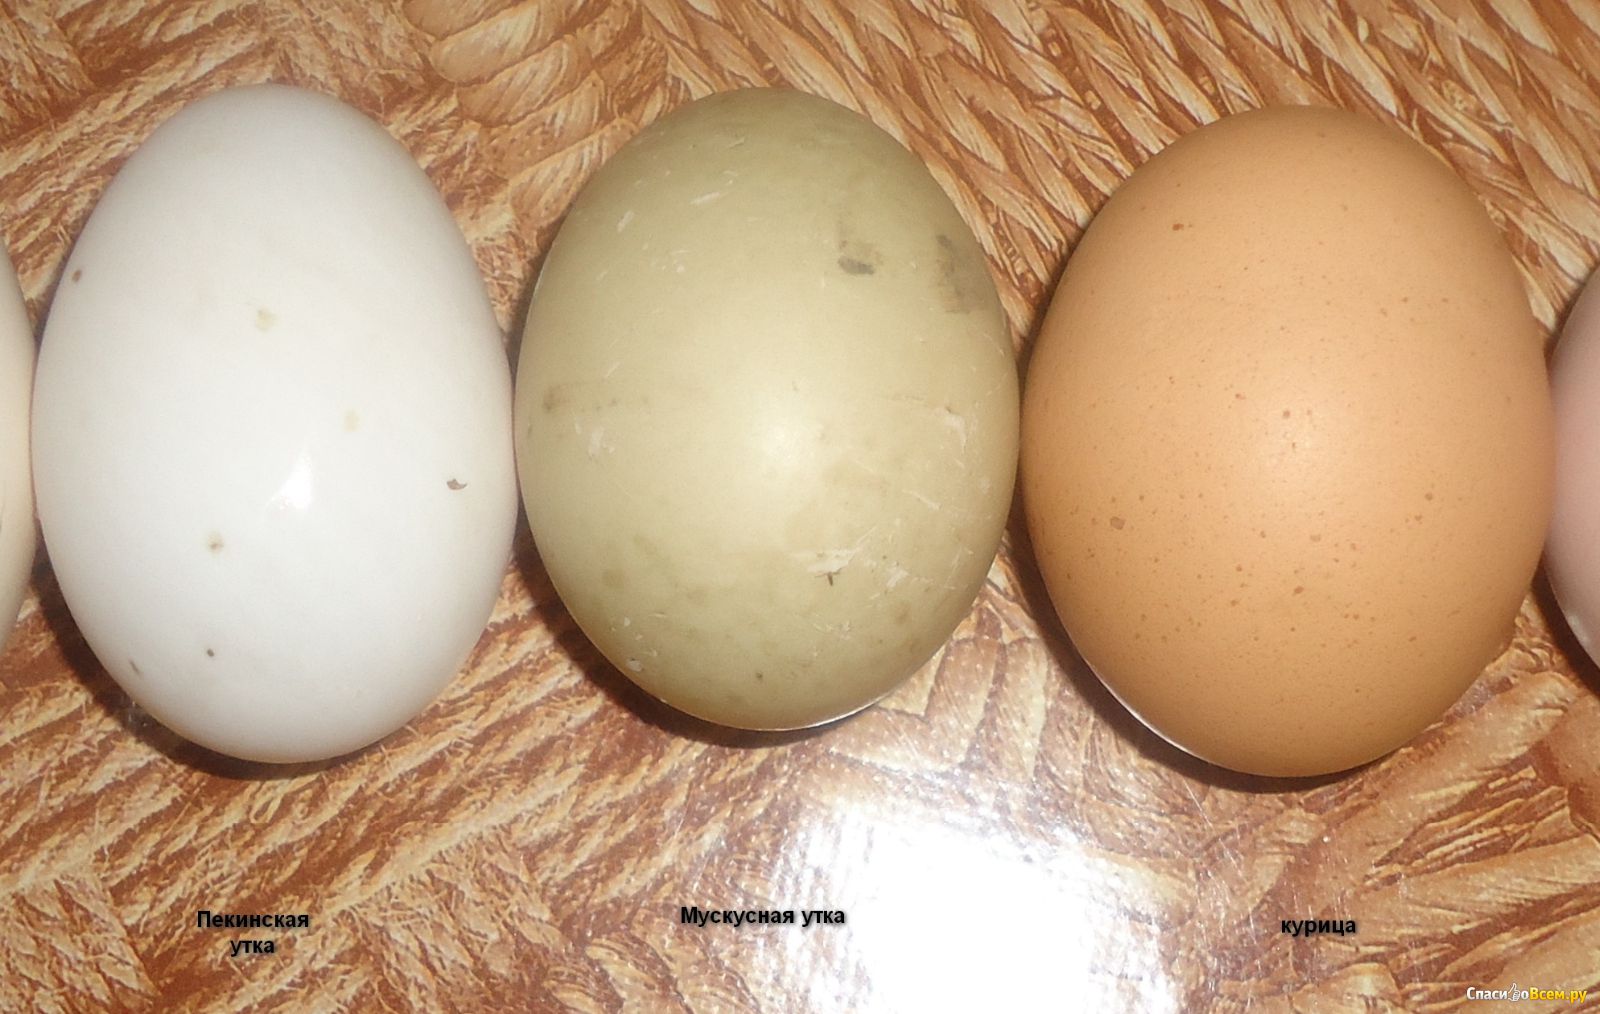 Купить яйцо мускусной. Яйцо мускусной утки. Яйца мускусных уток. Яйца Утиные мускусные. Размер яйца мускусной утки.